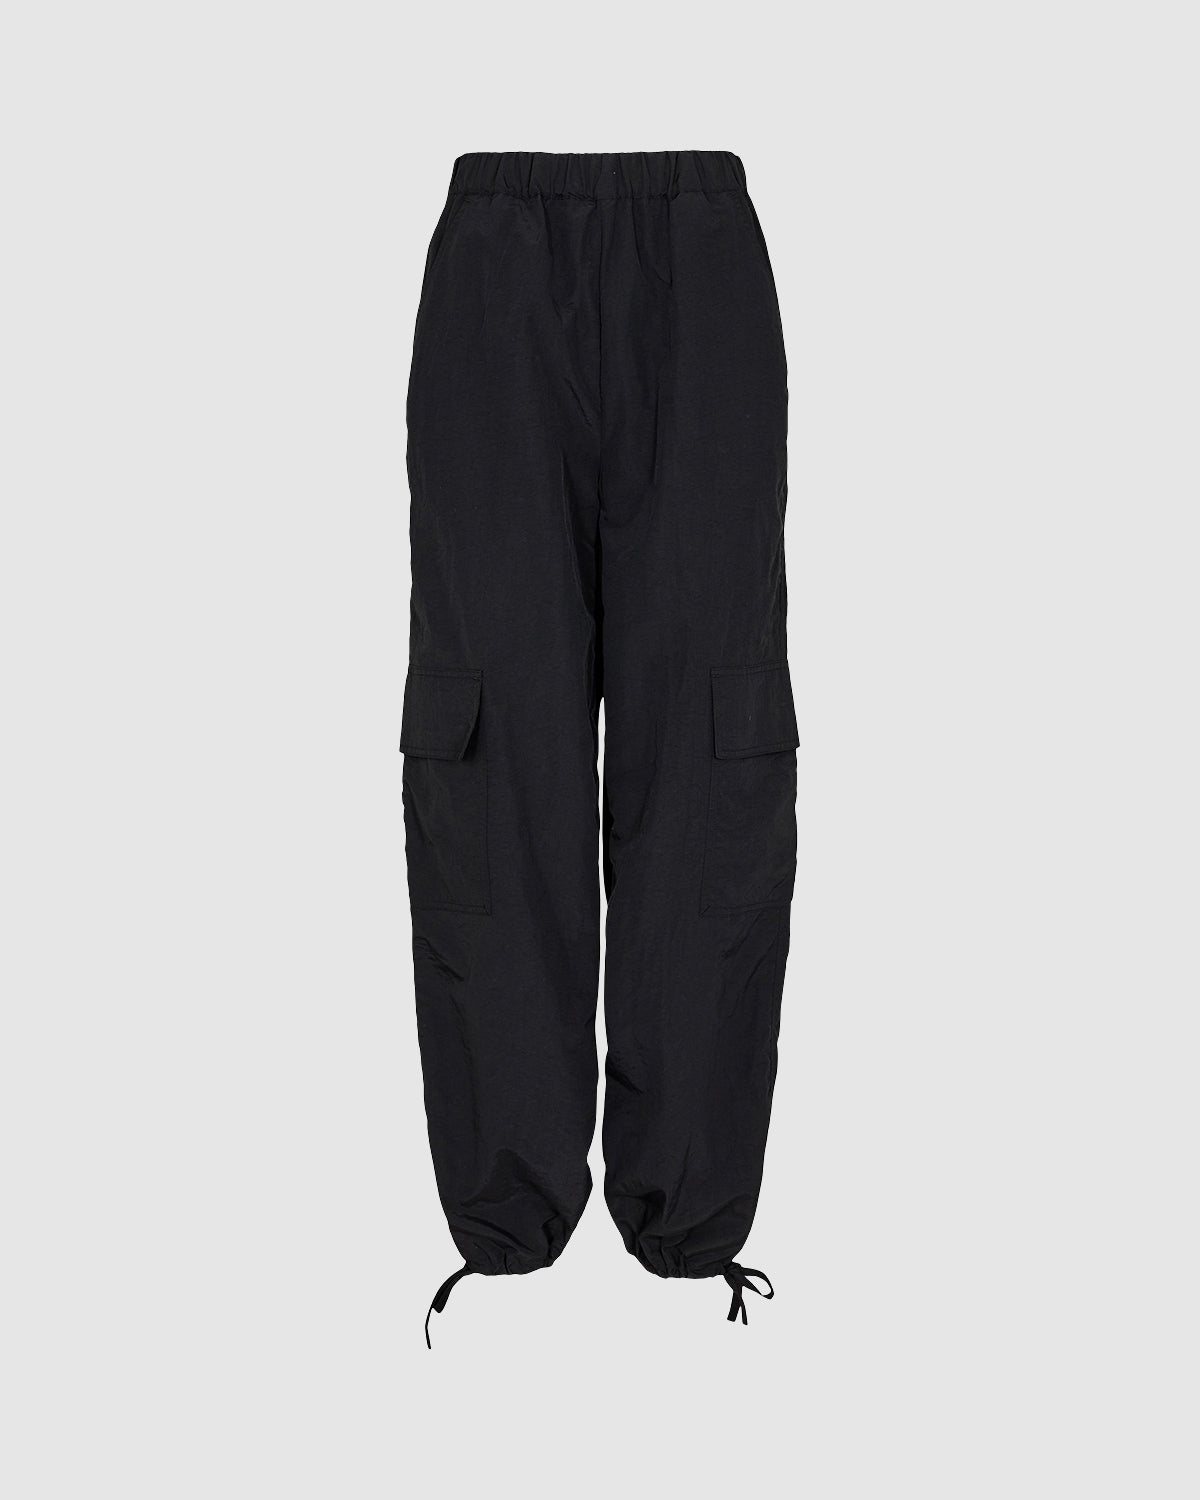 VOGO Athletica Black Gray Active Pants Size 3X (Plus) - 56% off